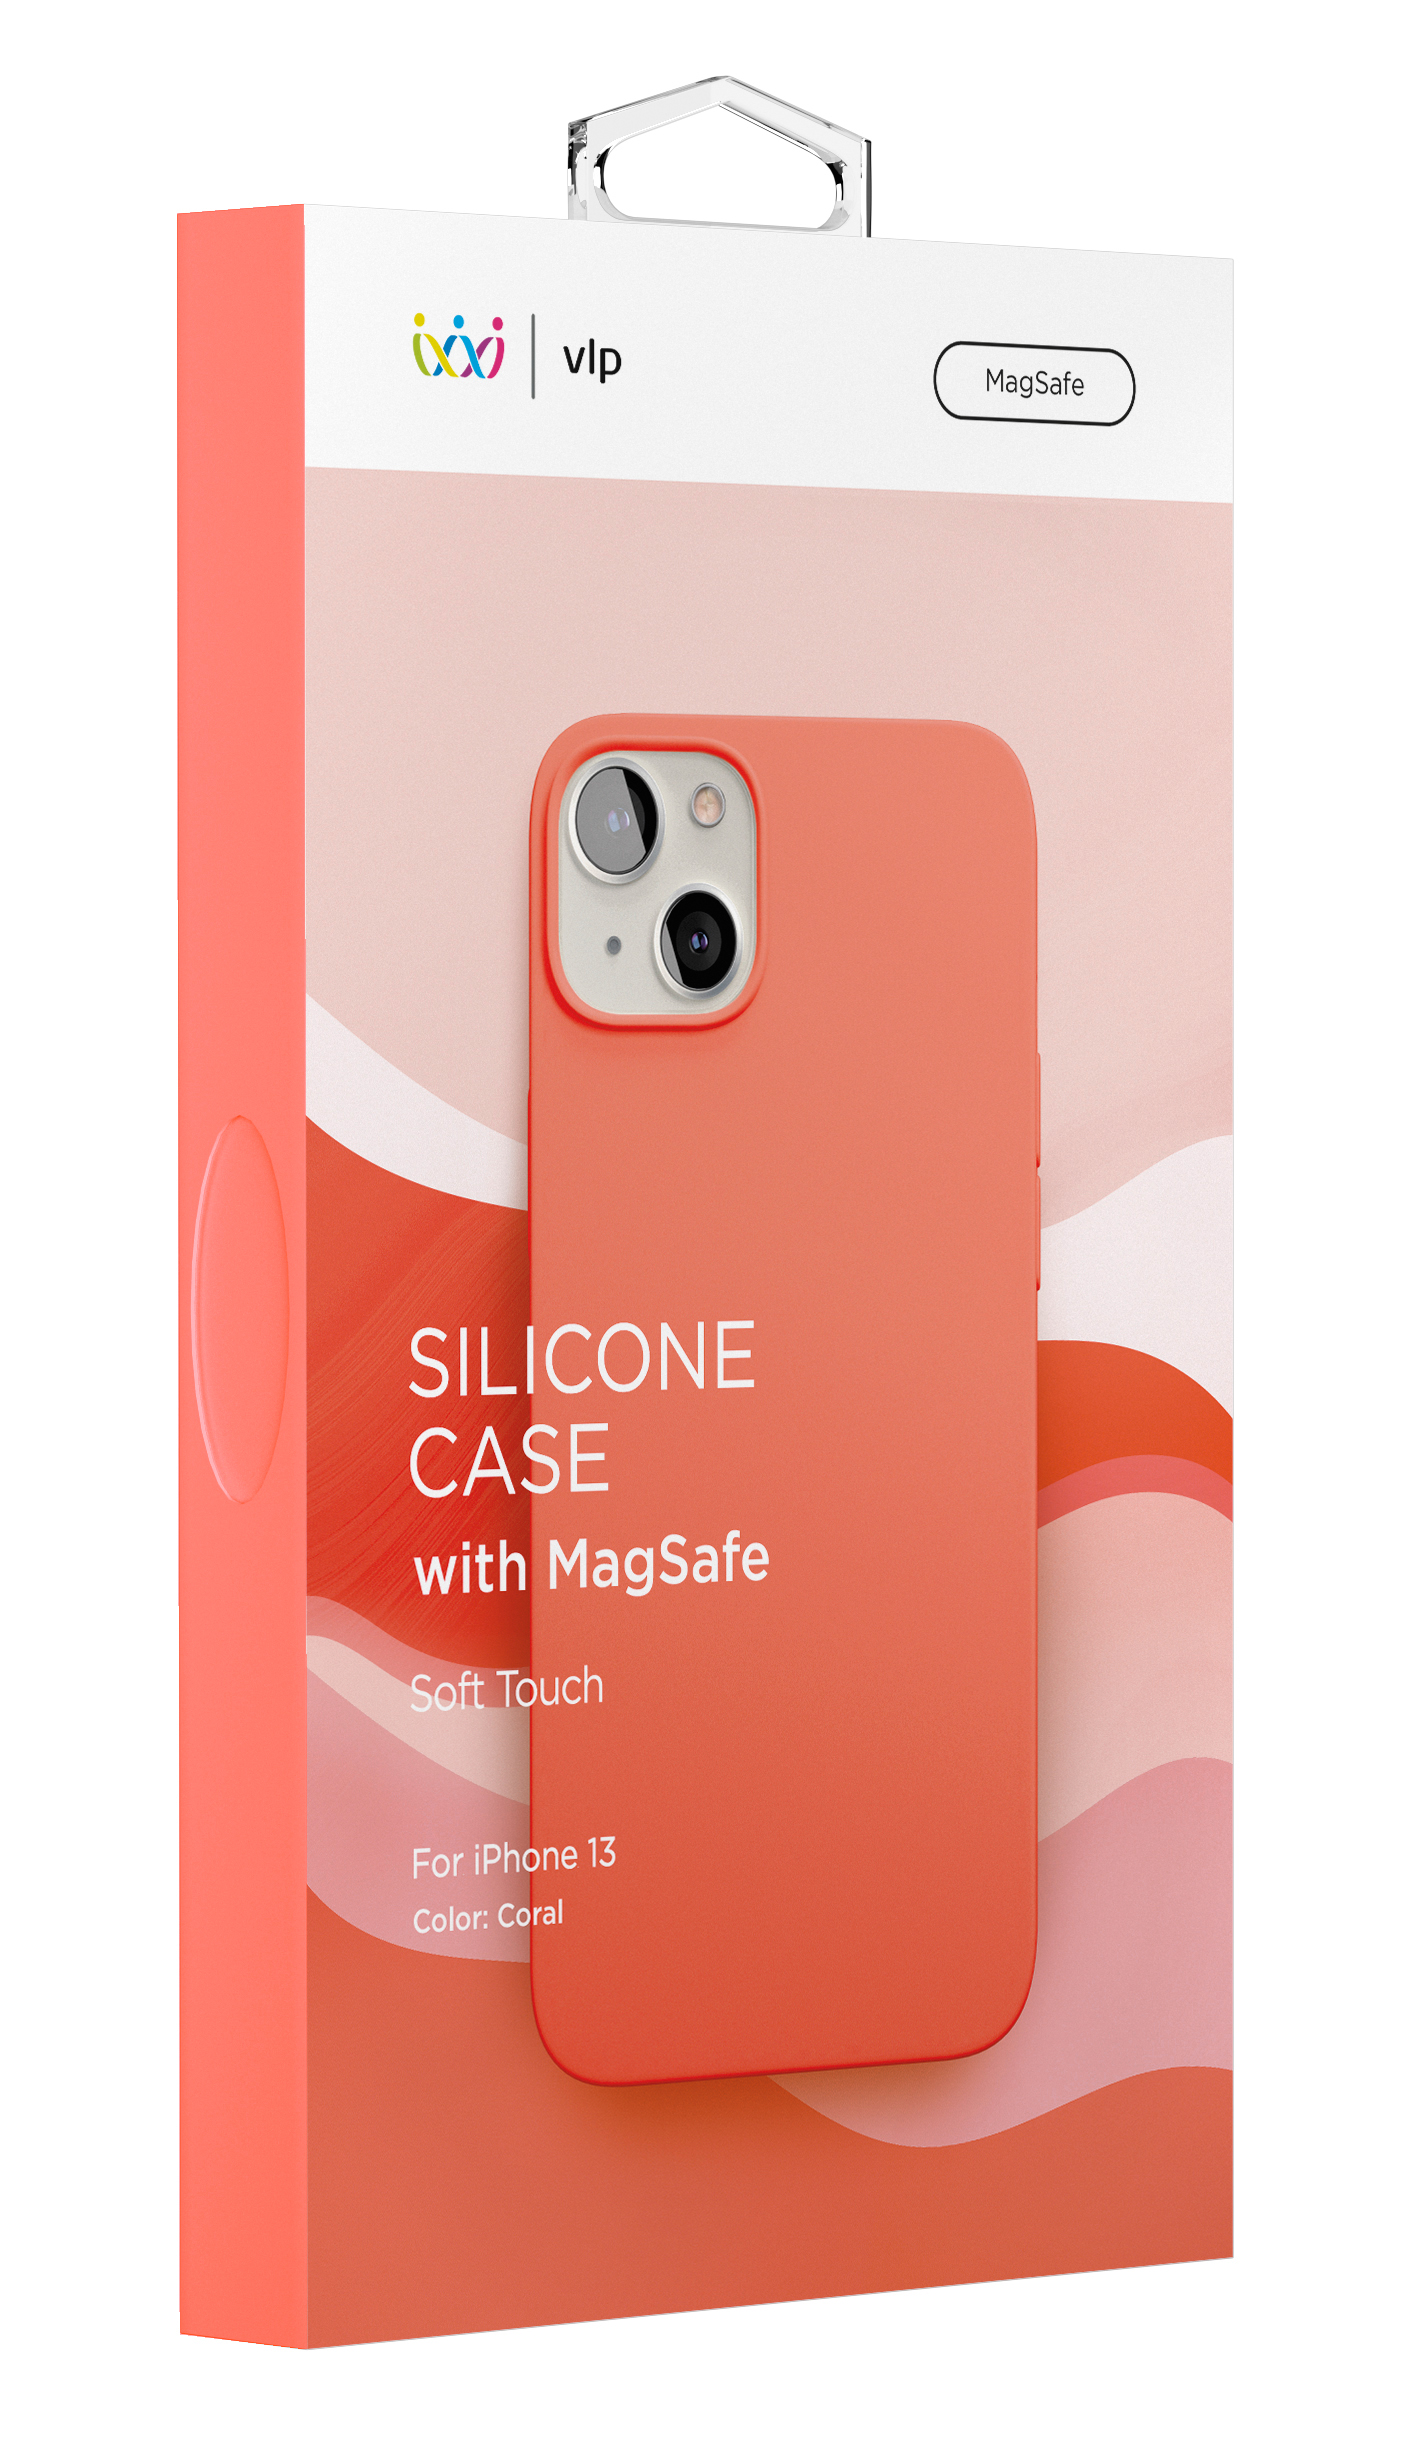 Фото — Чехол для смартфона vlp Silicone case with MagSafe для iPhone 13, коралловый